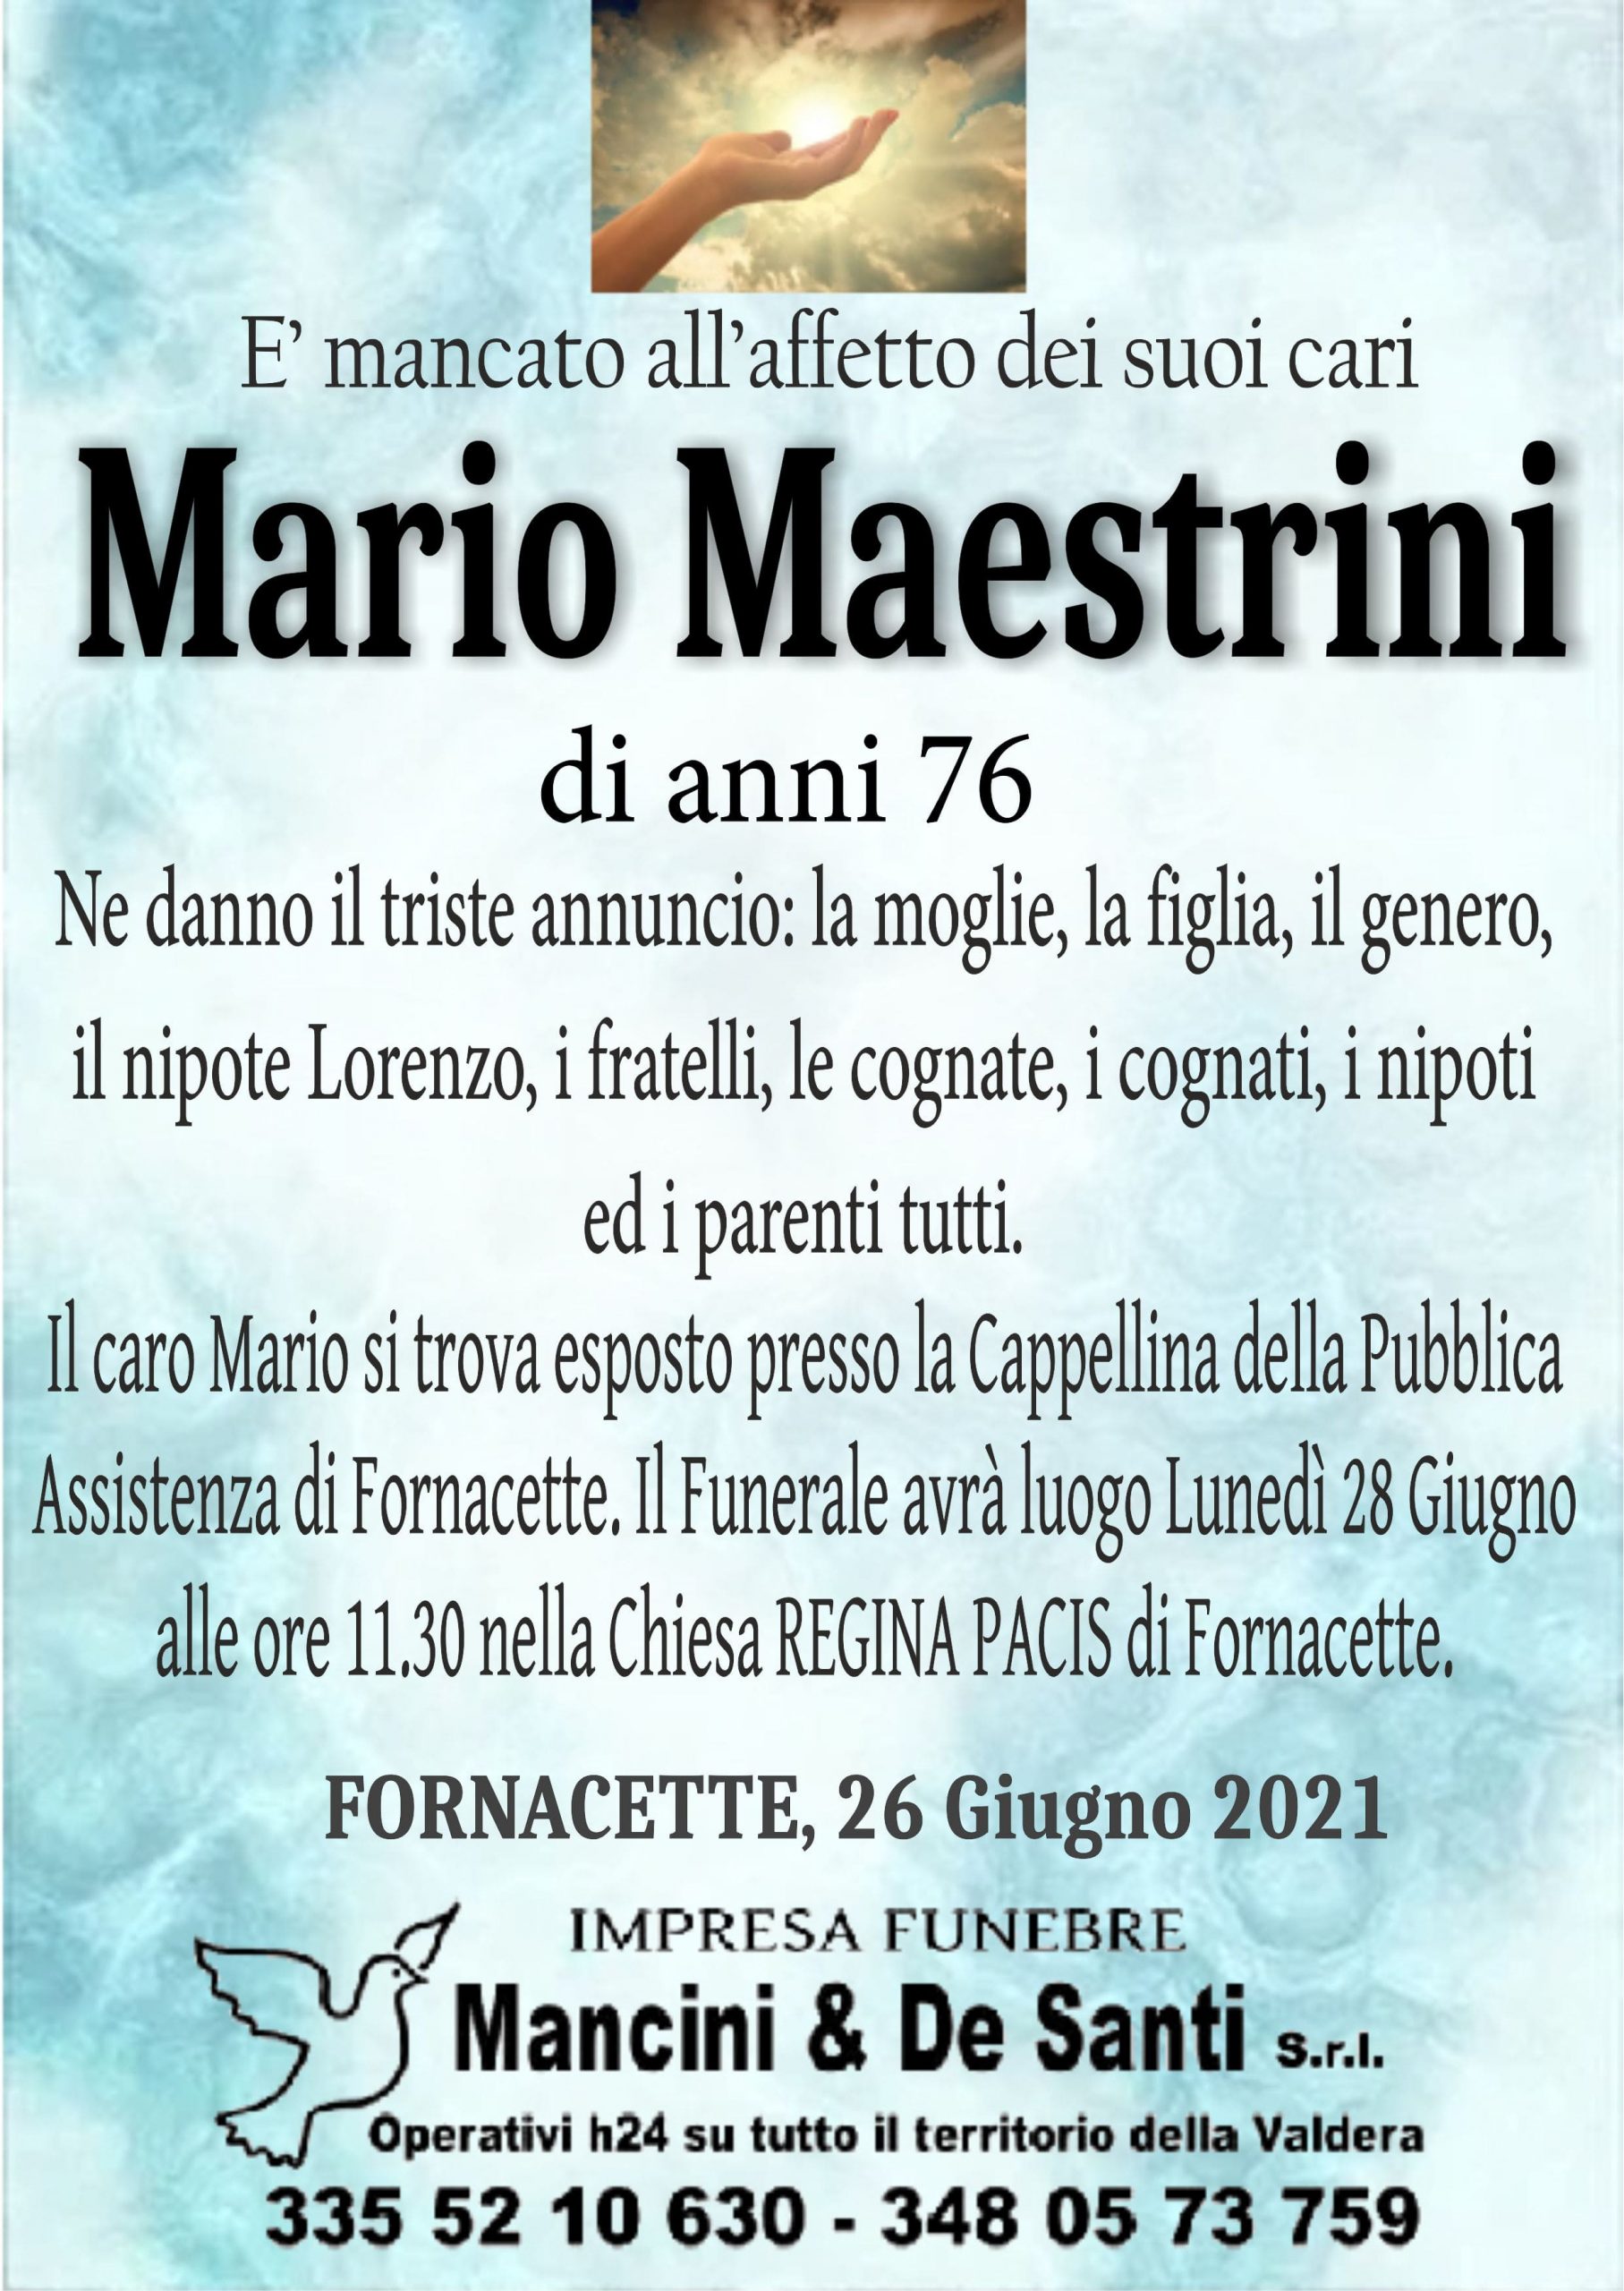 Avviso di Morte Maestrini Mario, di anni 76 - Calcinaia, Fornacette, Palaia - Onoranze Funebri Mancini